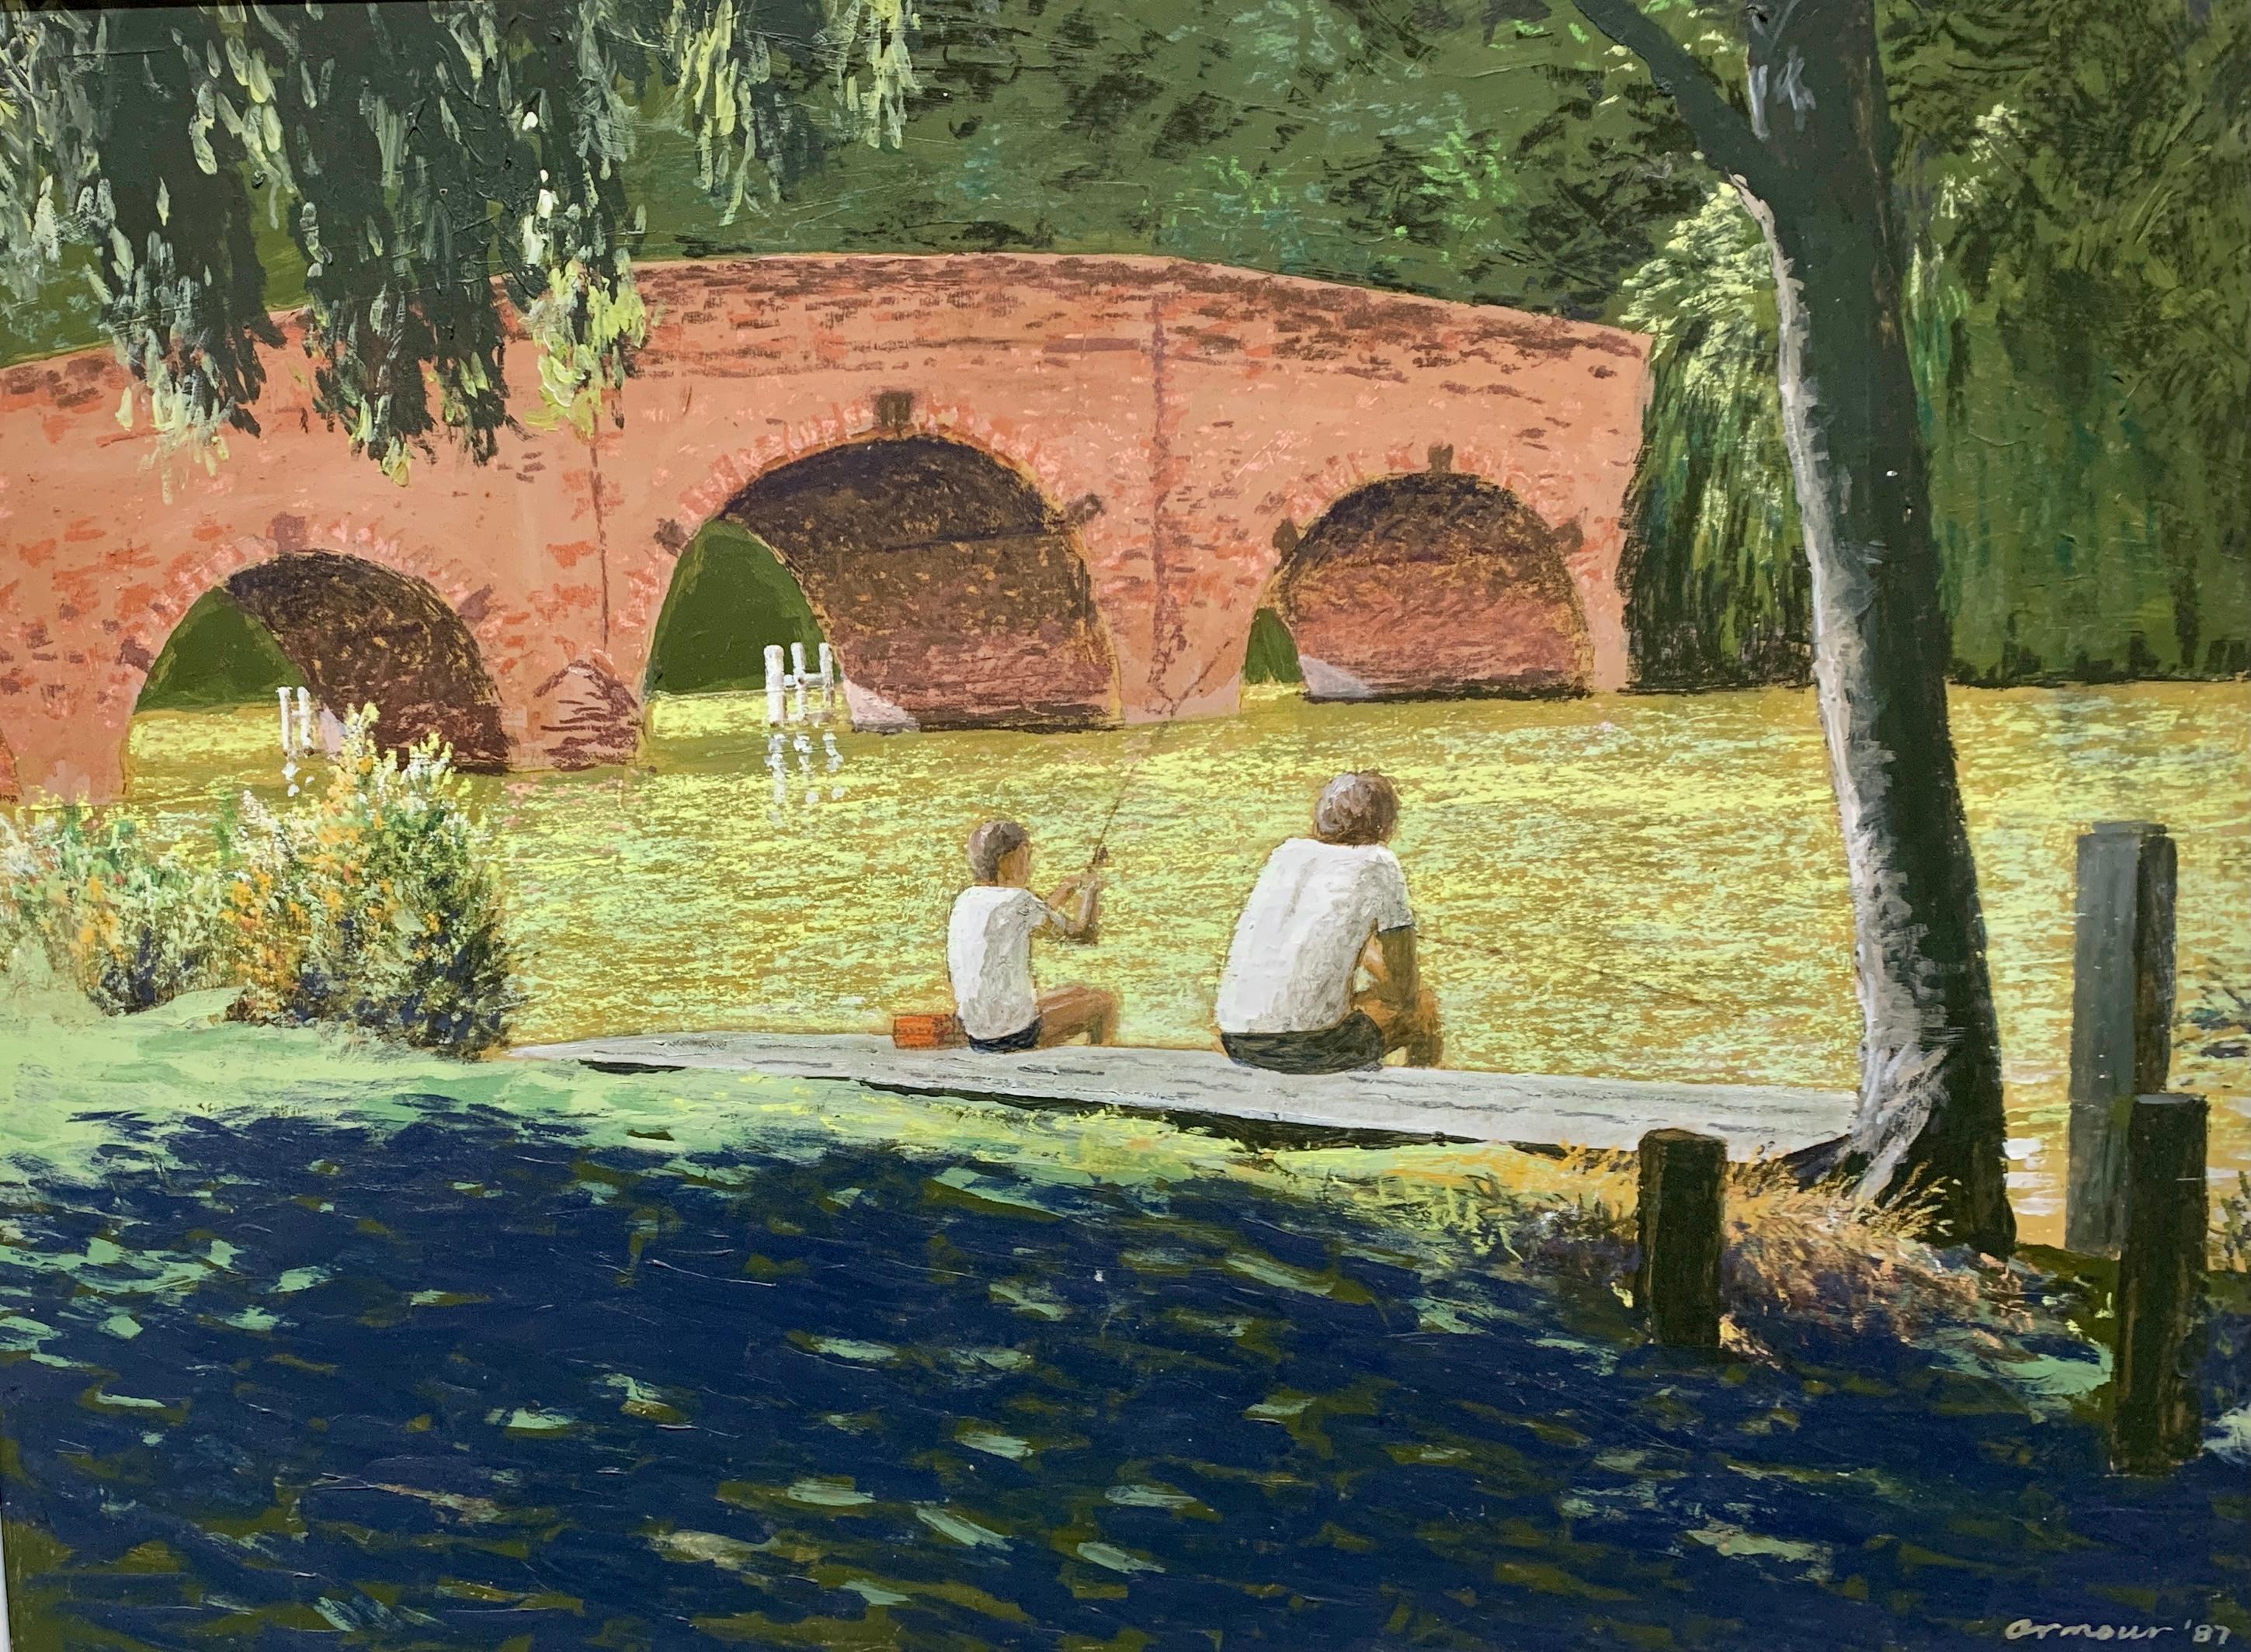 Moderne moderne britische Flusslandschaft des 20. Jahrhunderts, auf der Themse in Sonning – Painting von D.Armour